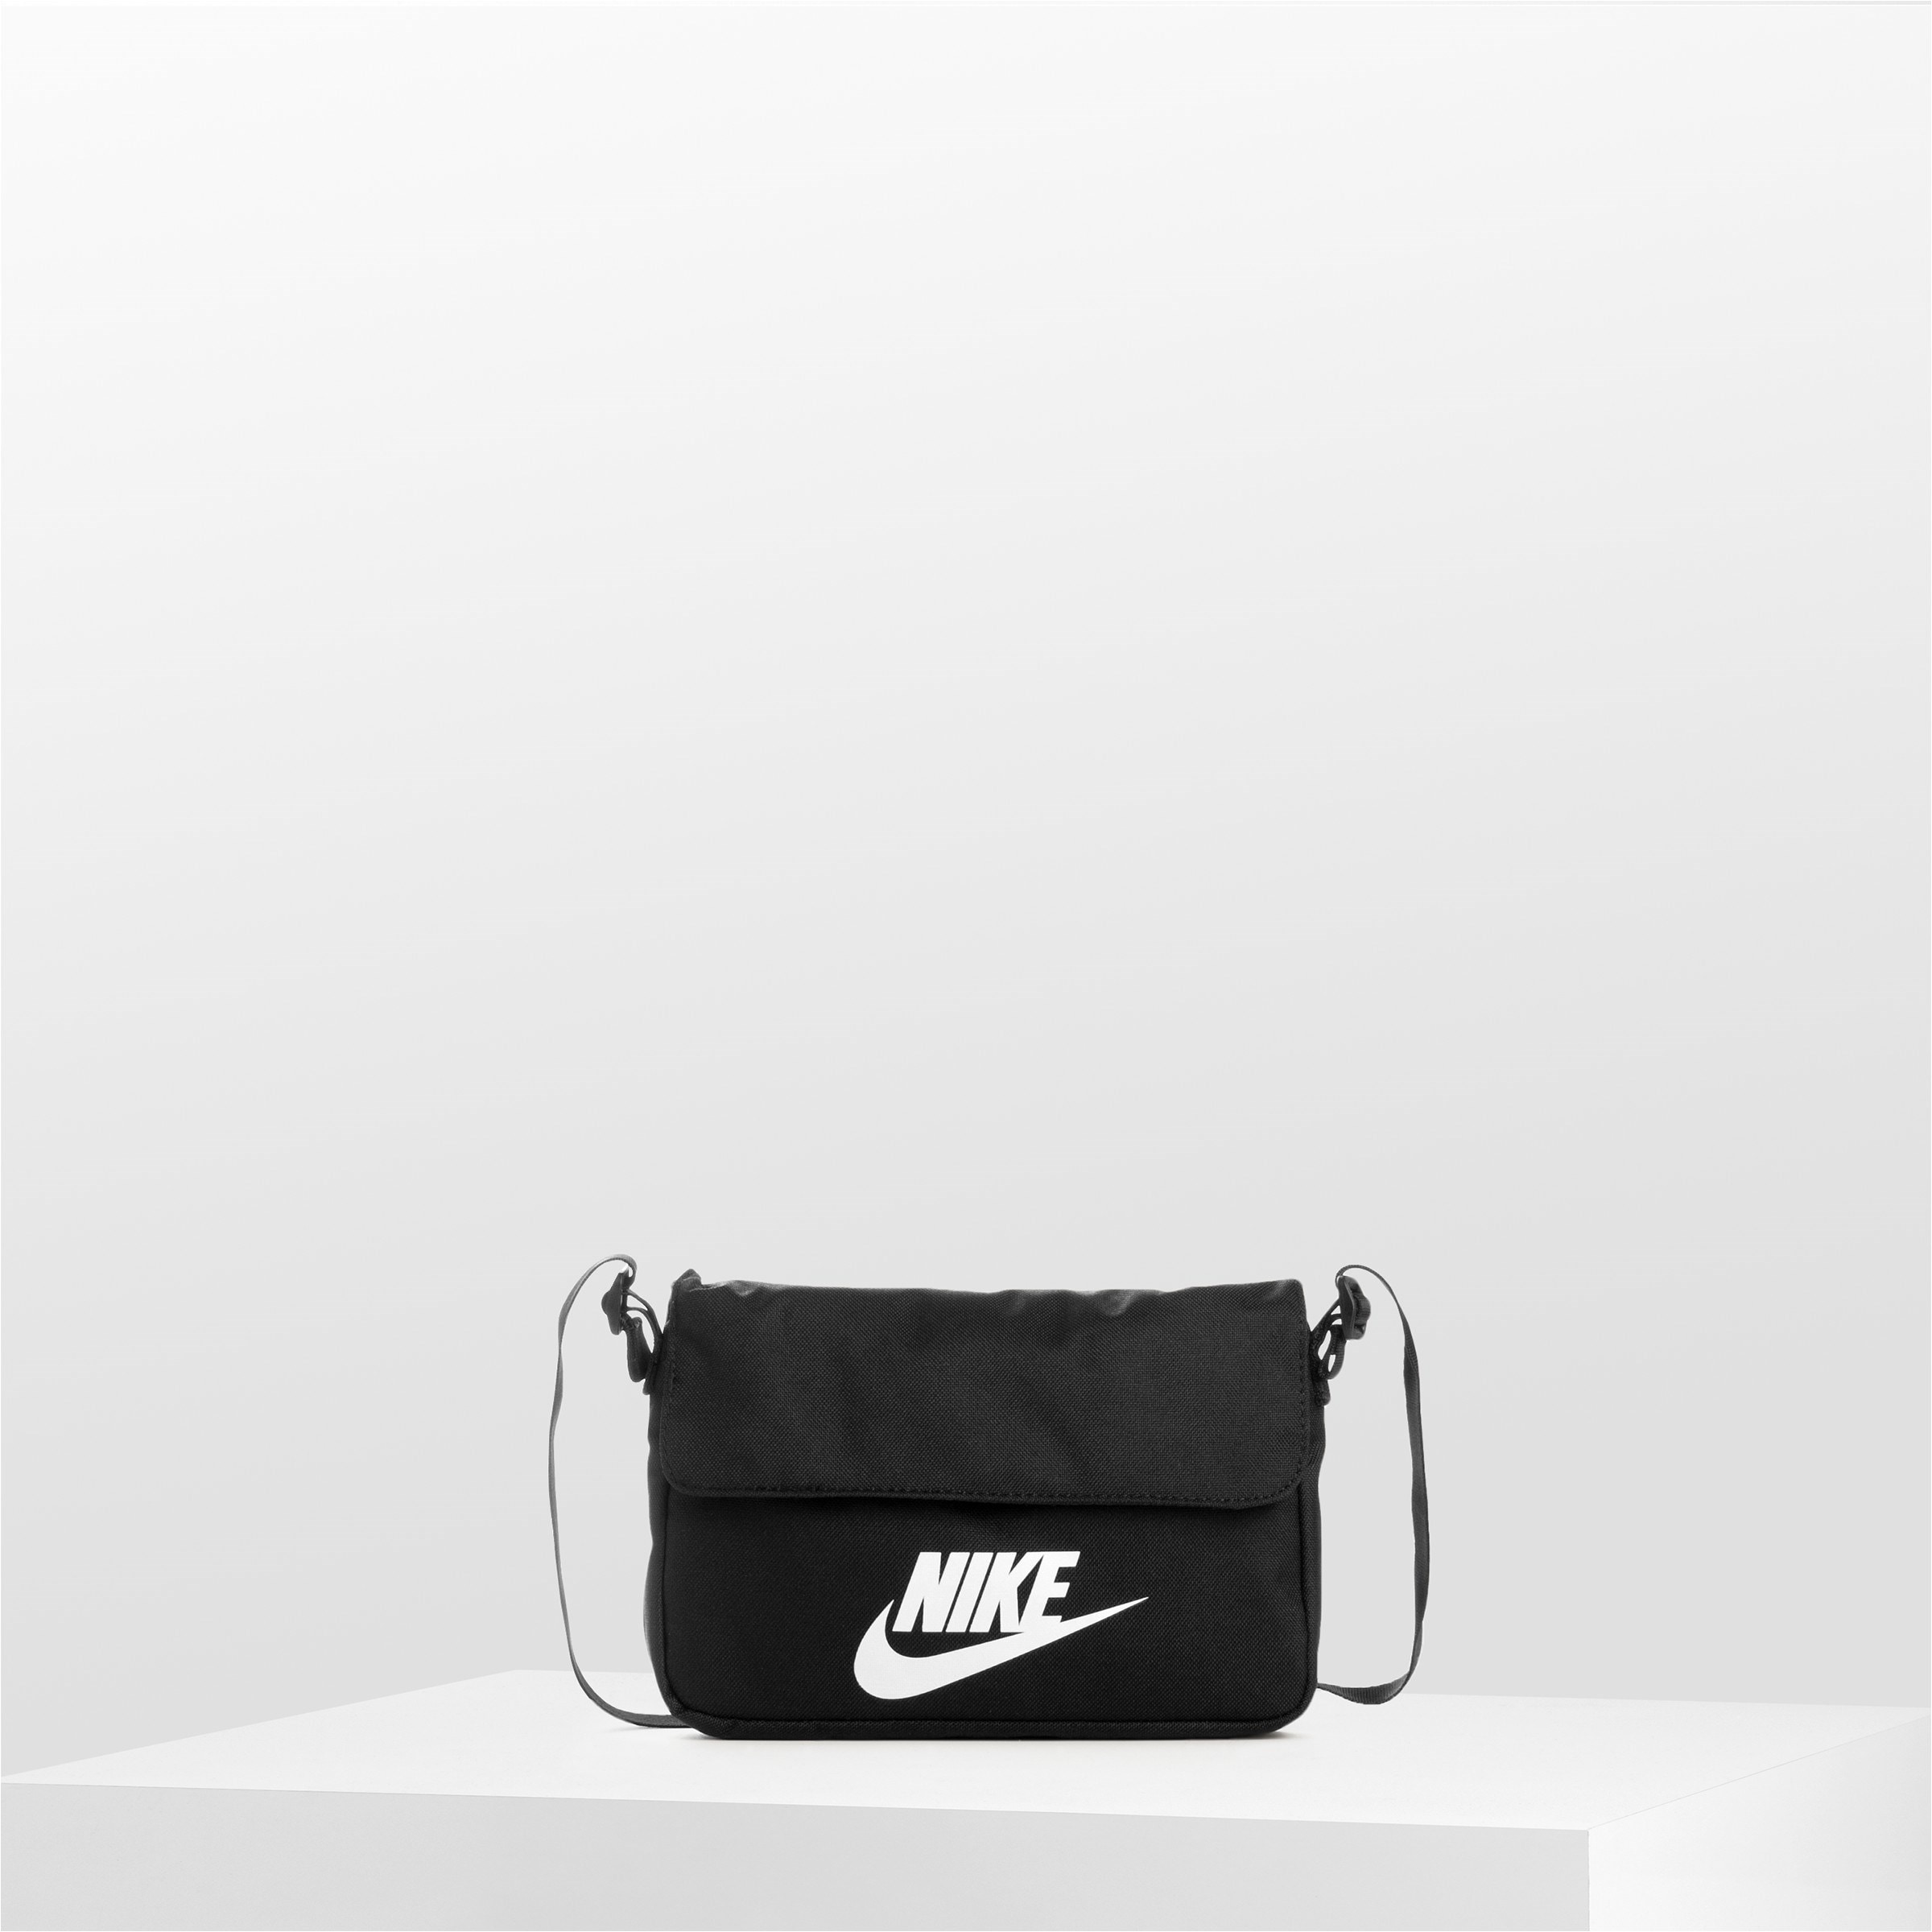 Nike Revel cross body bag in black